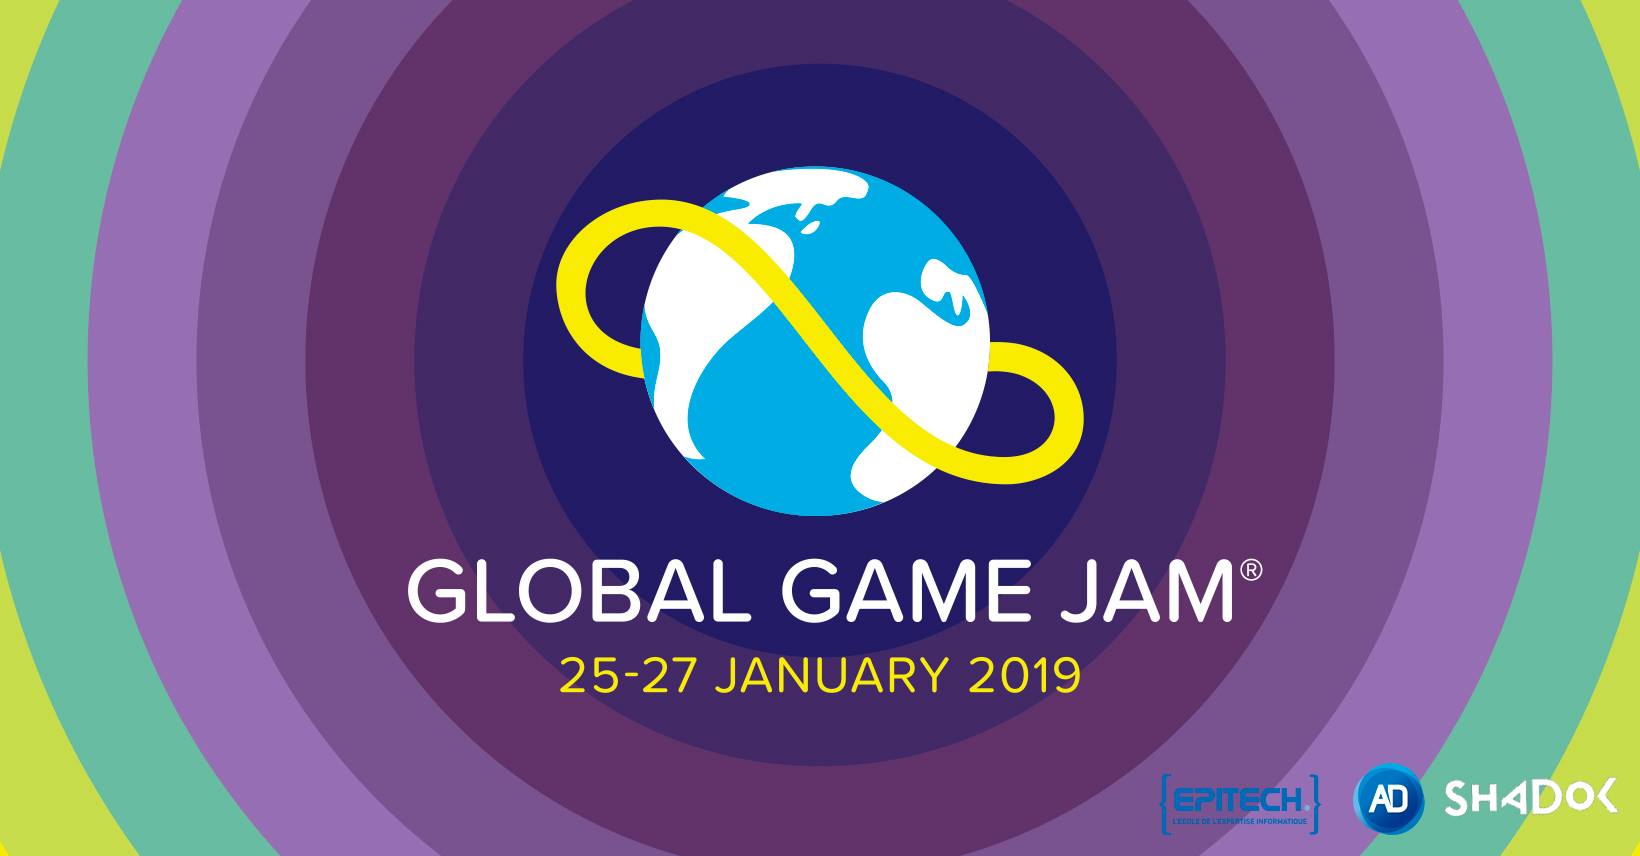 [ÉVÉNEMENT] Global Game Jam Strasbourg 2019